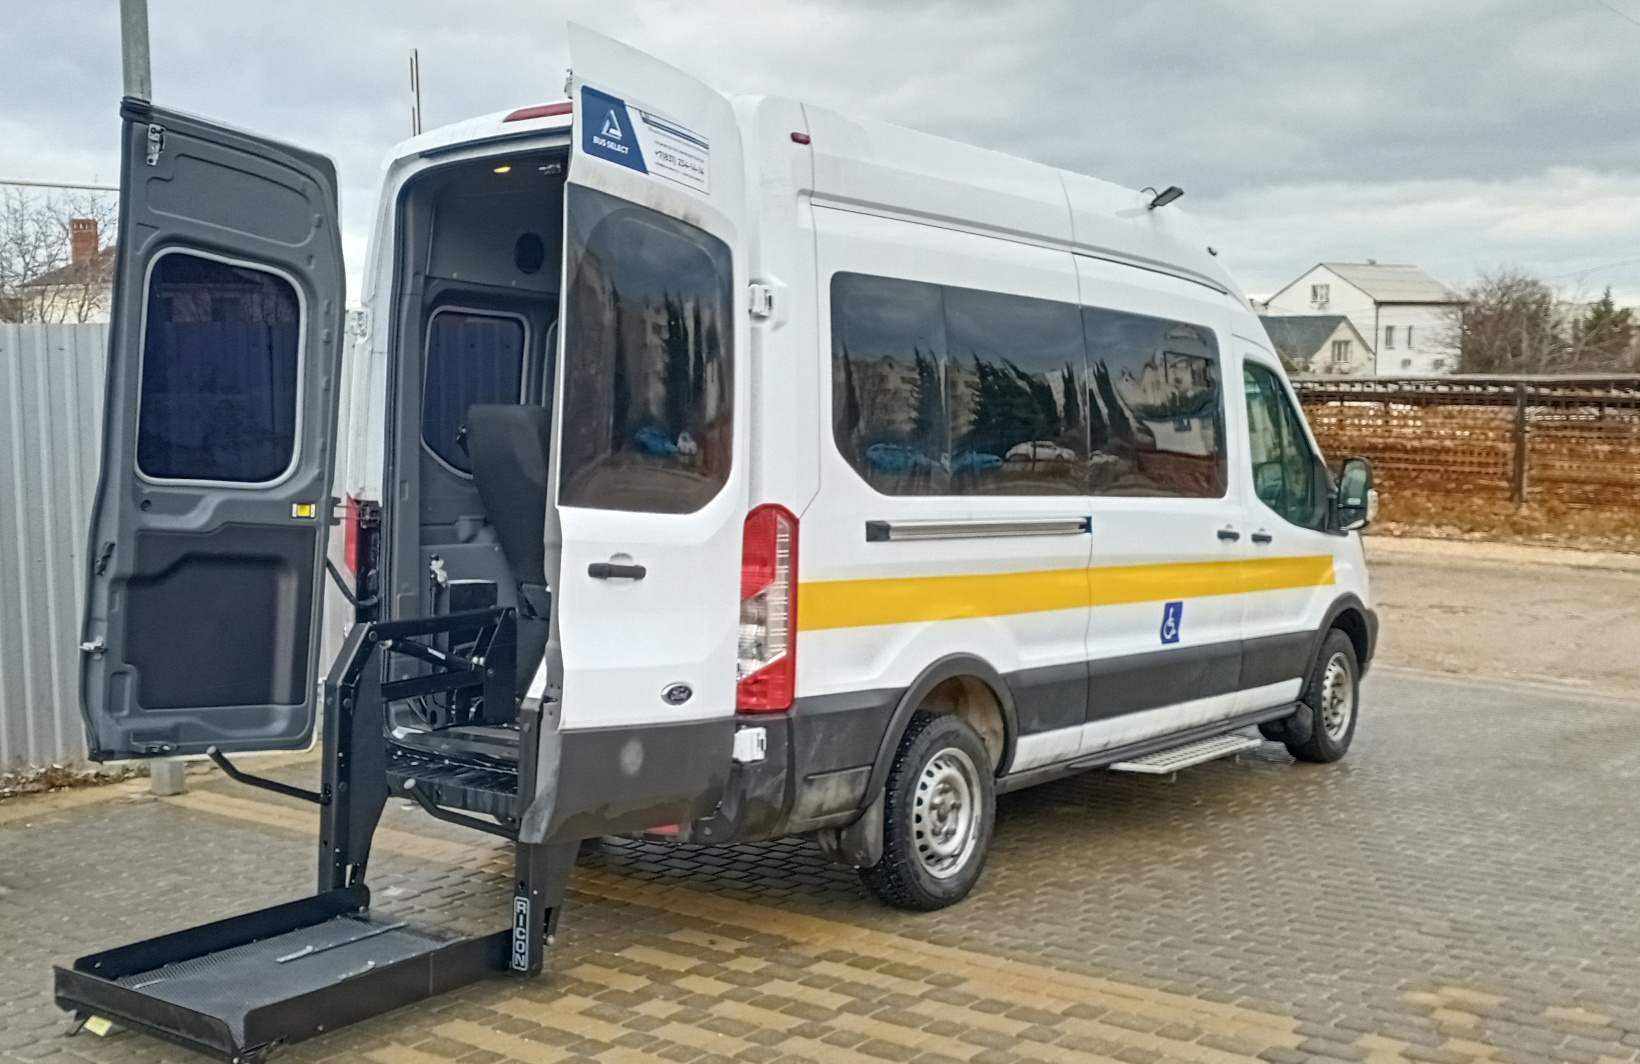 Автобус, оборудованный для перевозки инвалидов-колясочников. Фото предоставлено Севастопольским отделением РГО